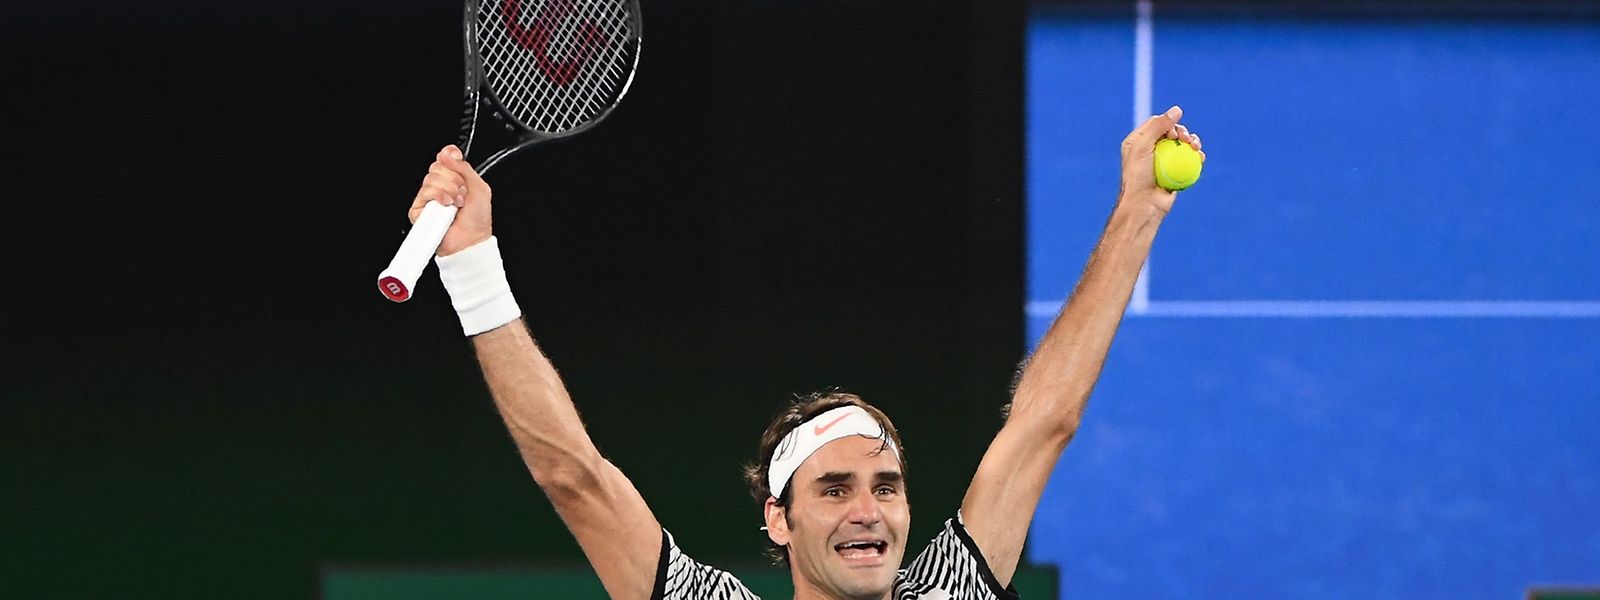 Roger Federer bewies gegen Ende der Begegnung große Nervenstärke.